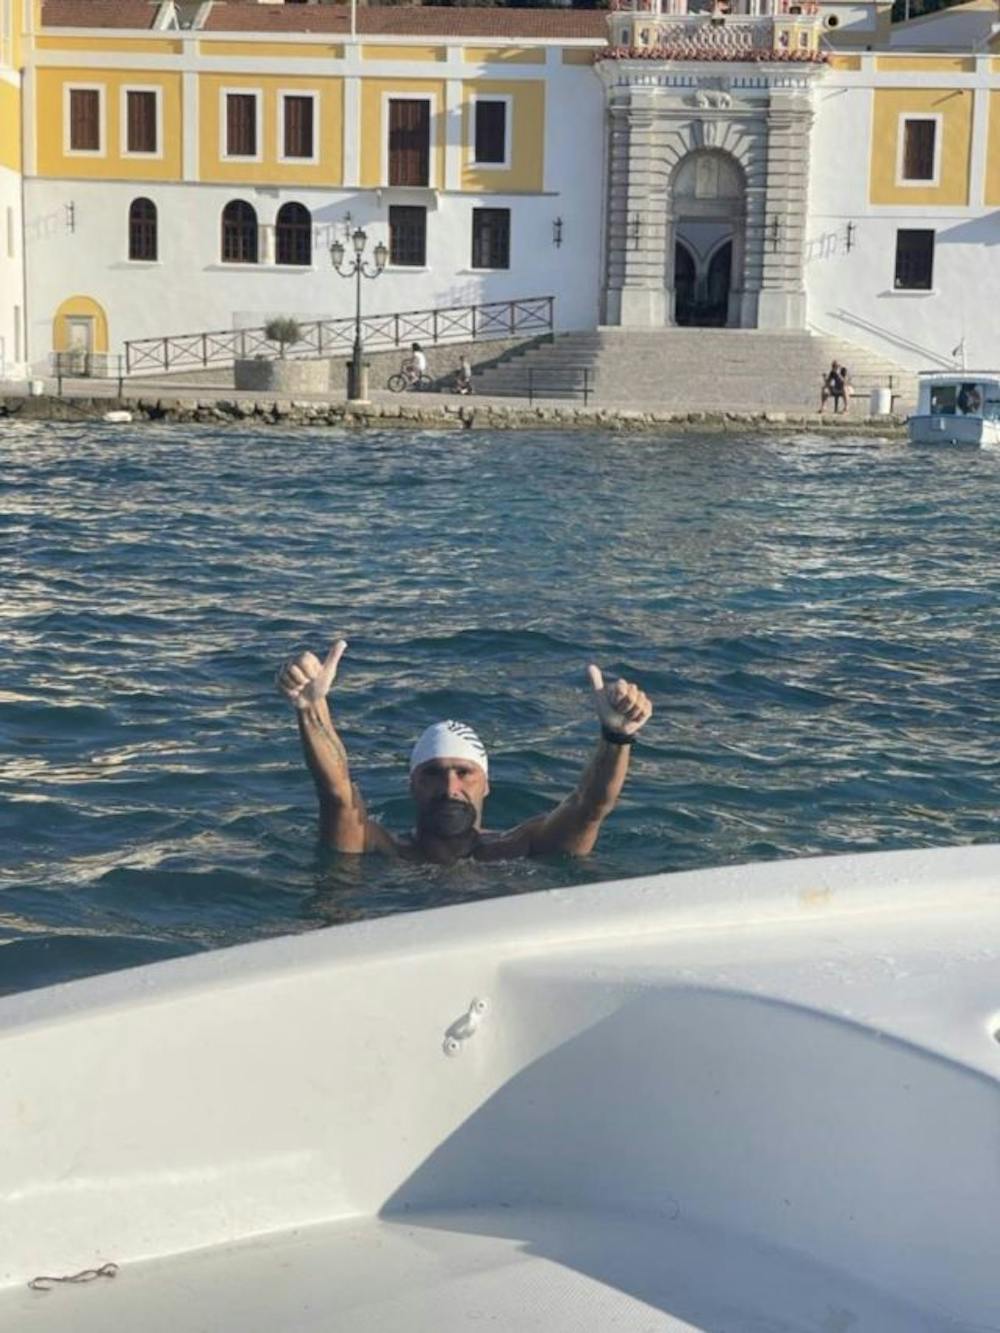 Χ. Ταϊγανίδης: Στέλνει ένα δυνατό μήνυμα κολυμπώντας την διαδρομή Ρόδος – Πανορμίτης! runbeat.gr 